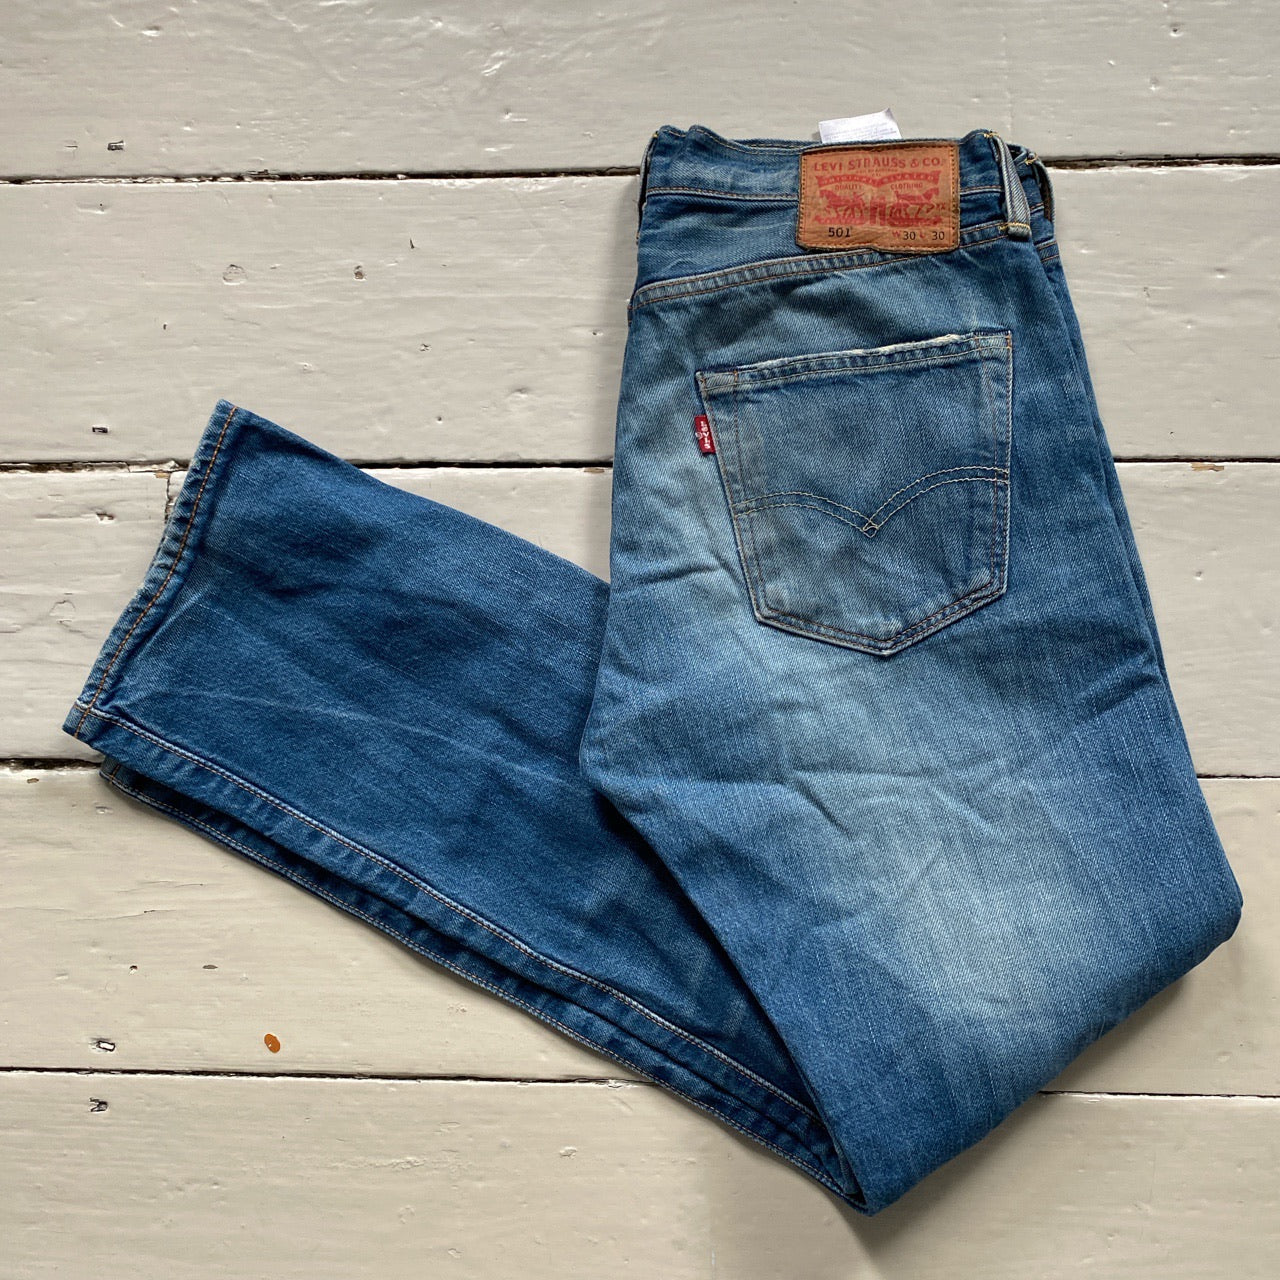 Levis 501 Blue Jeans (30/30)